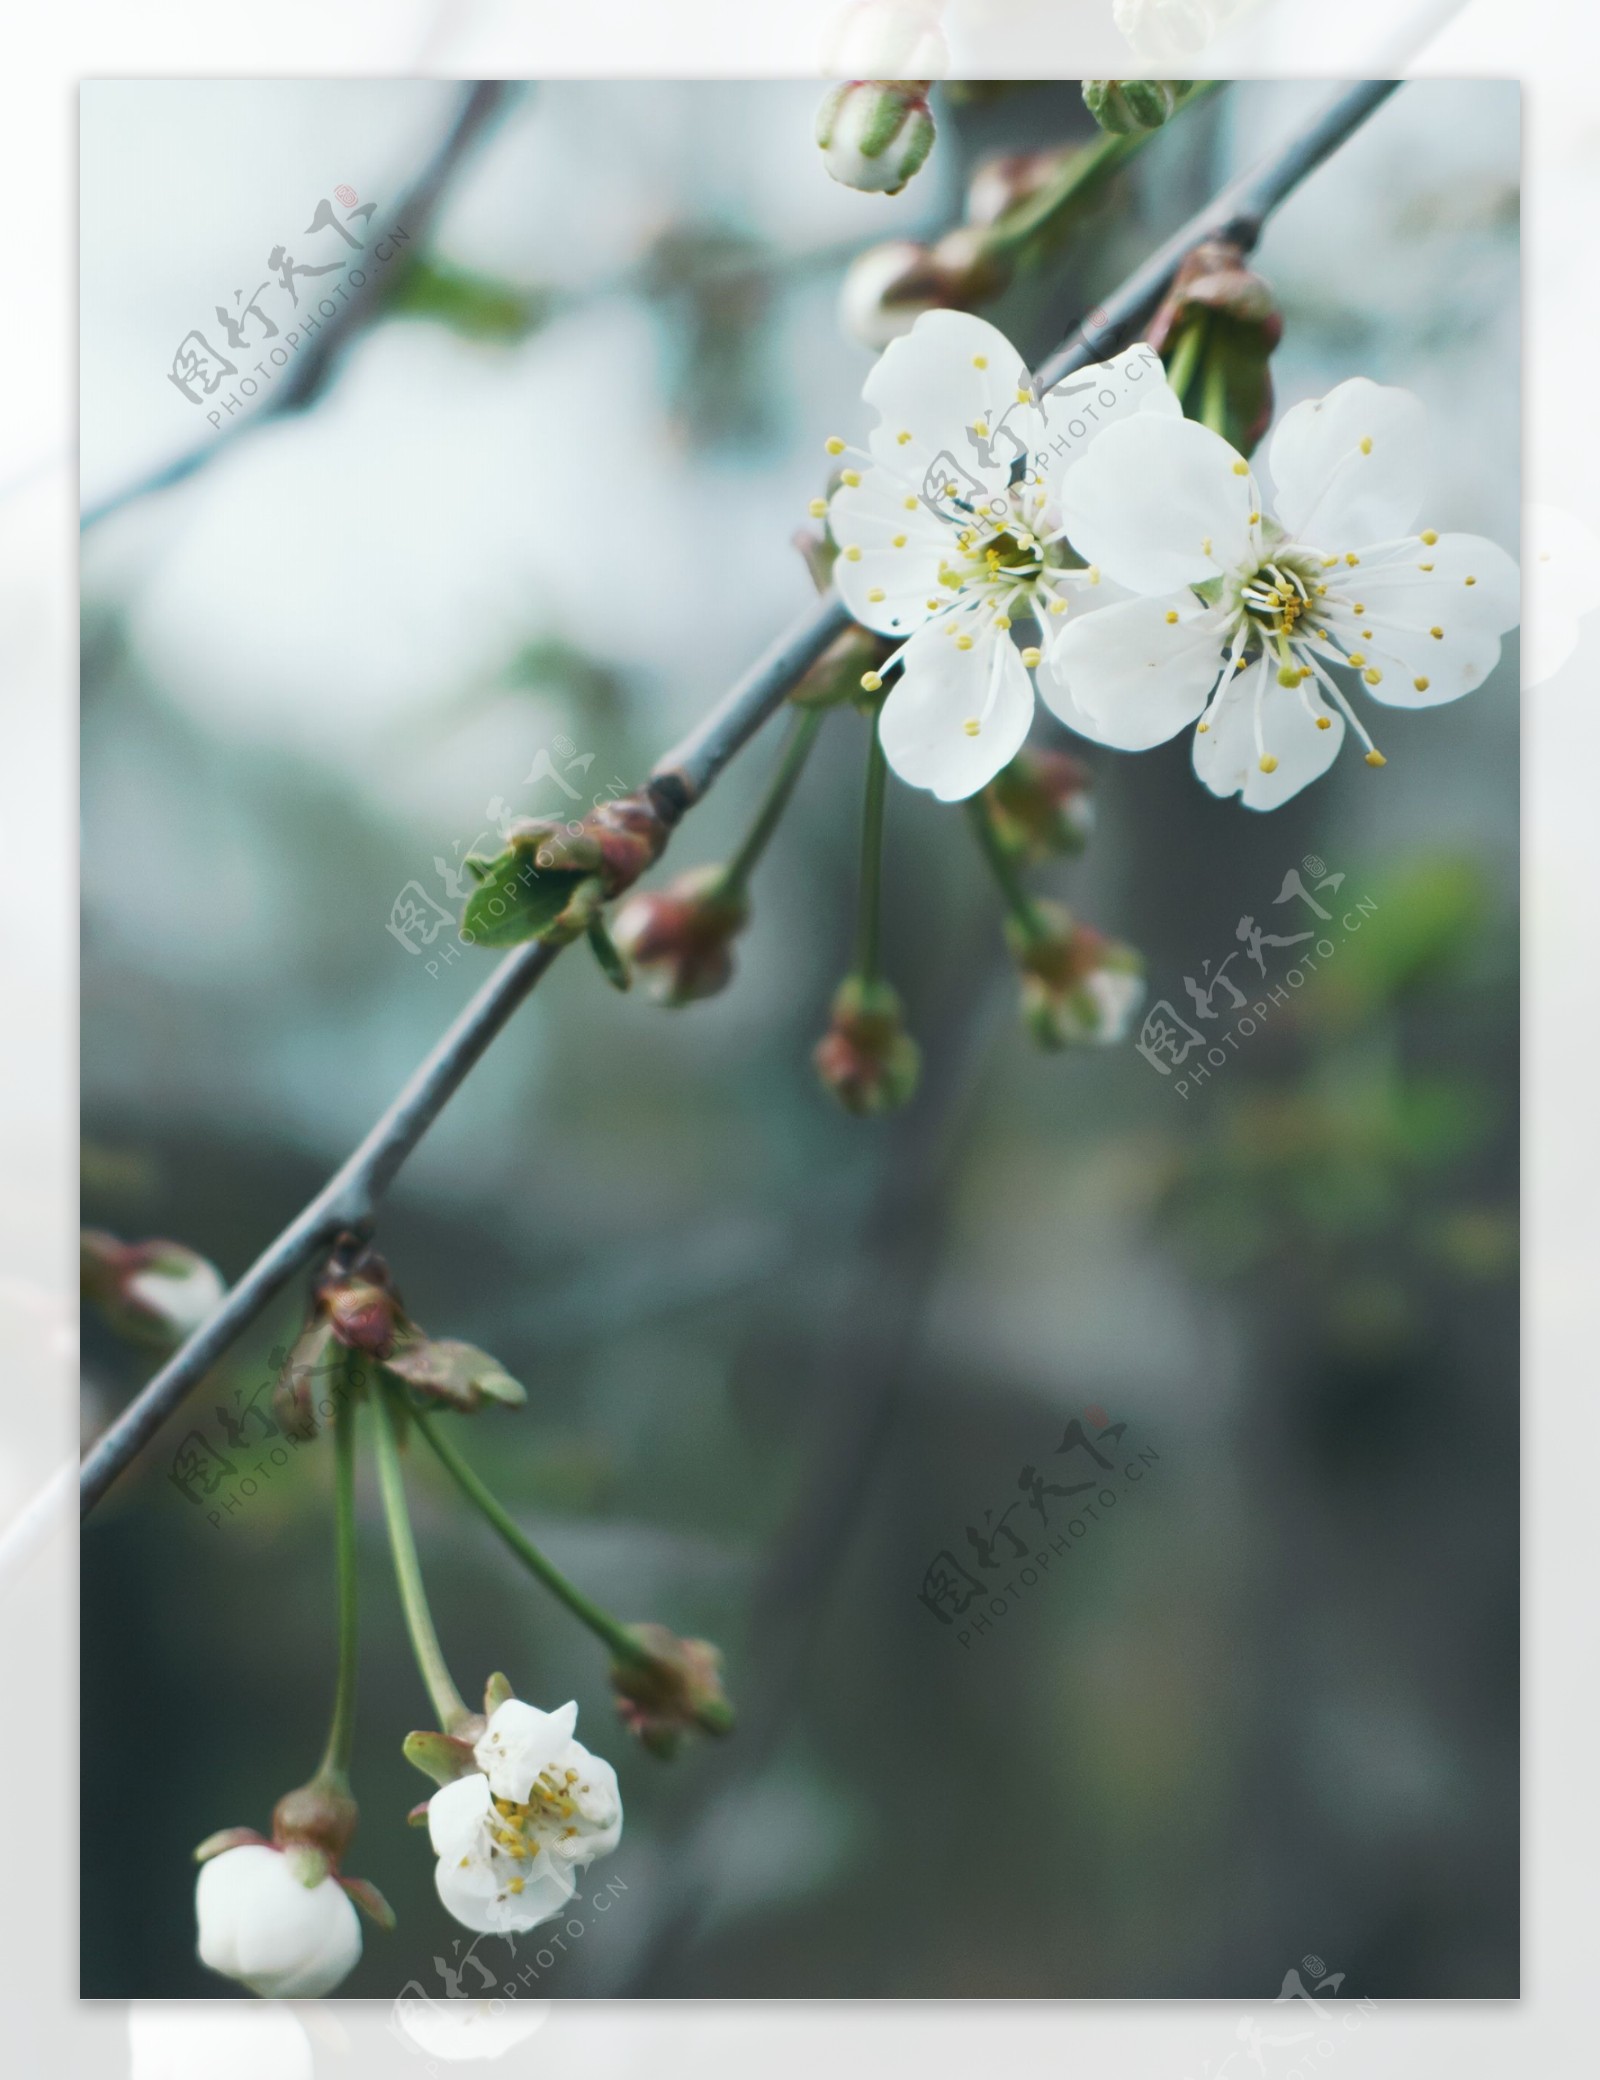 白色梨花图片